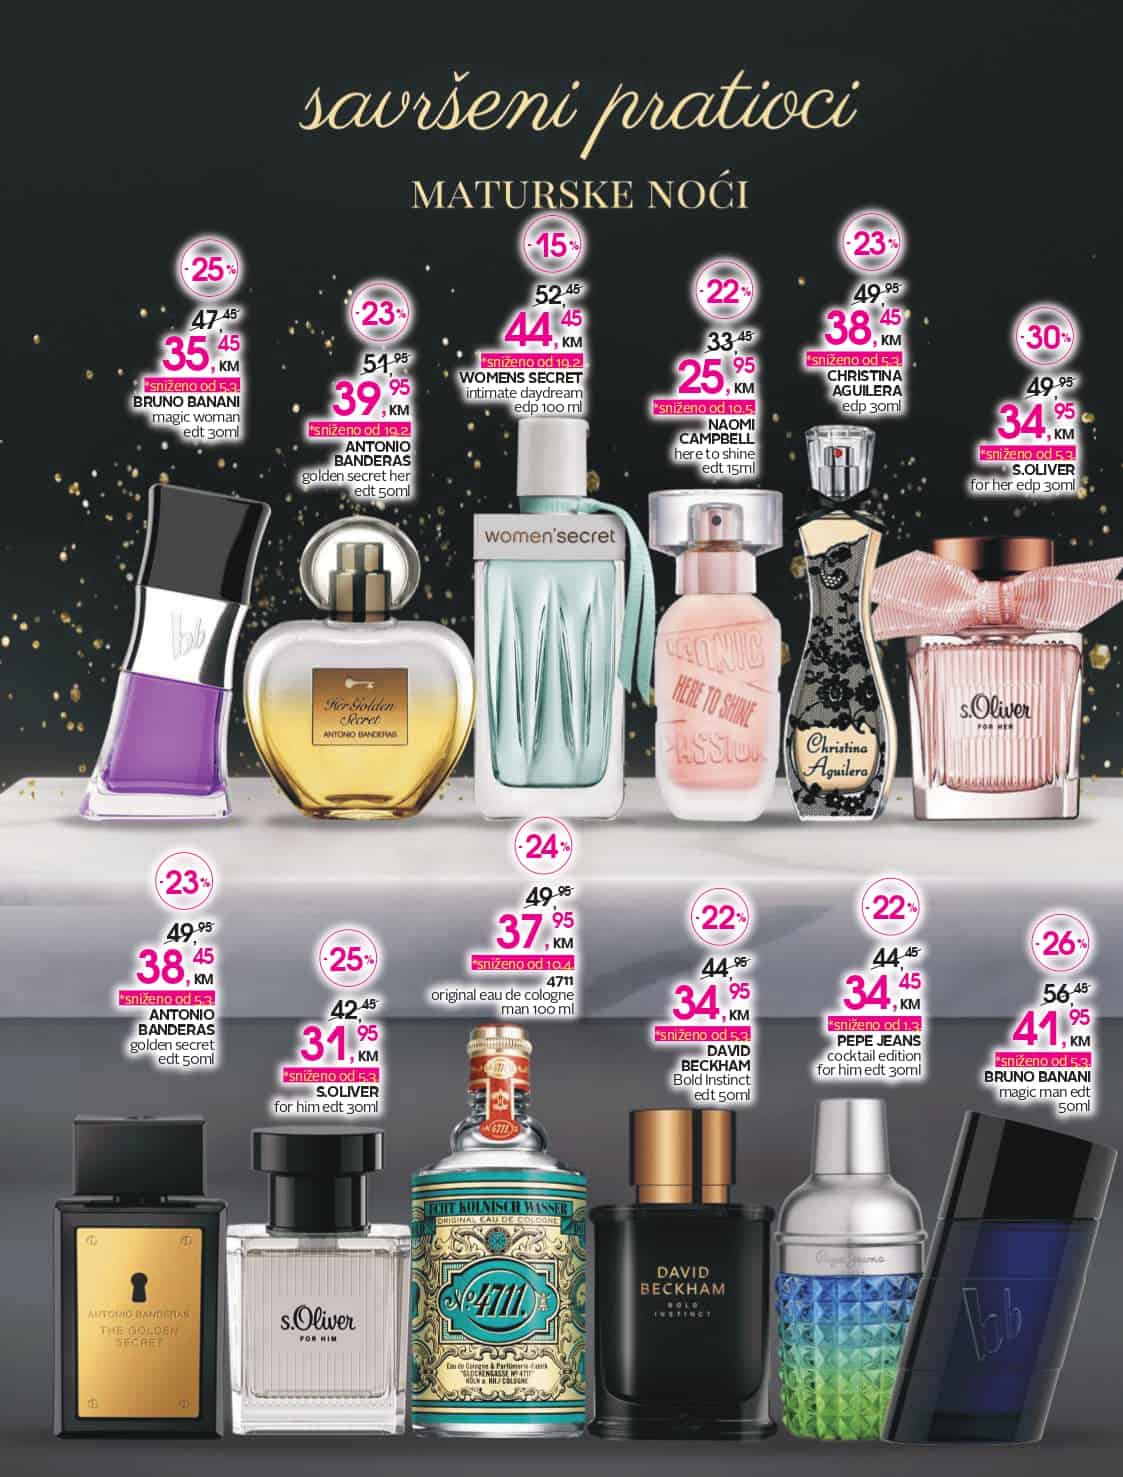 cm akcijski katalog 13-27.05.2022. u cm prodavnicama pronadjite parfeme proizvode po akcijskim cijenama!